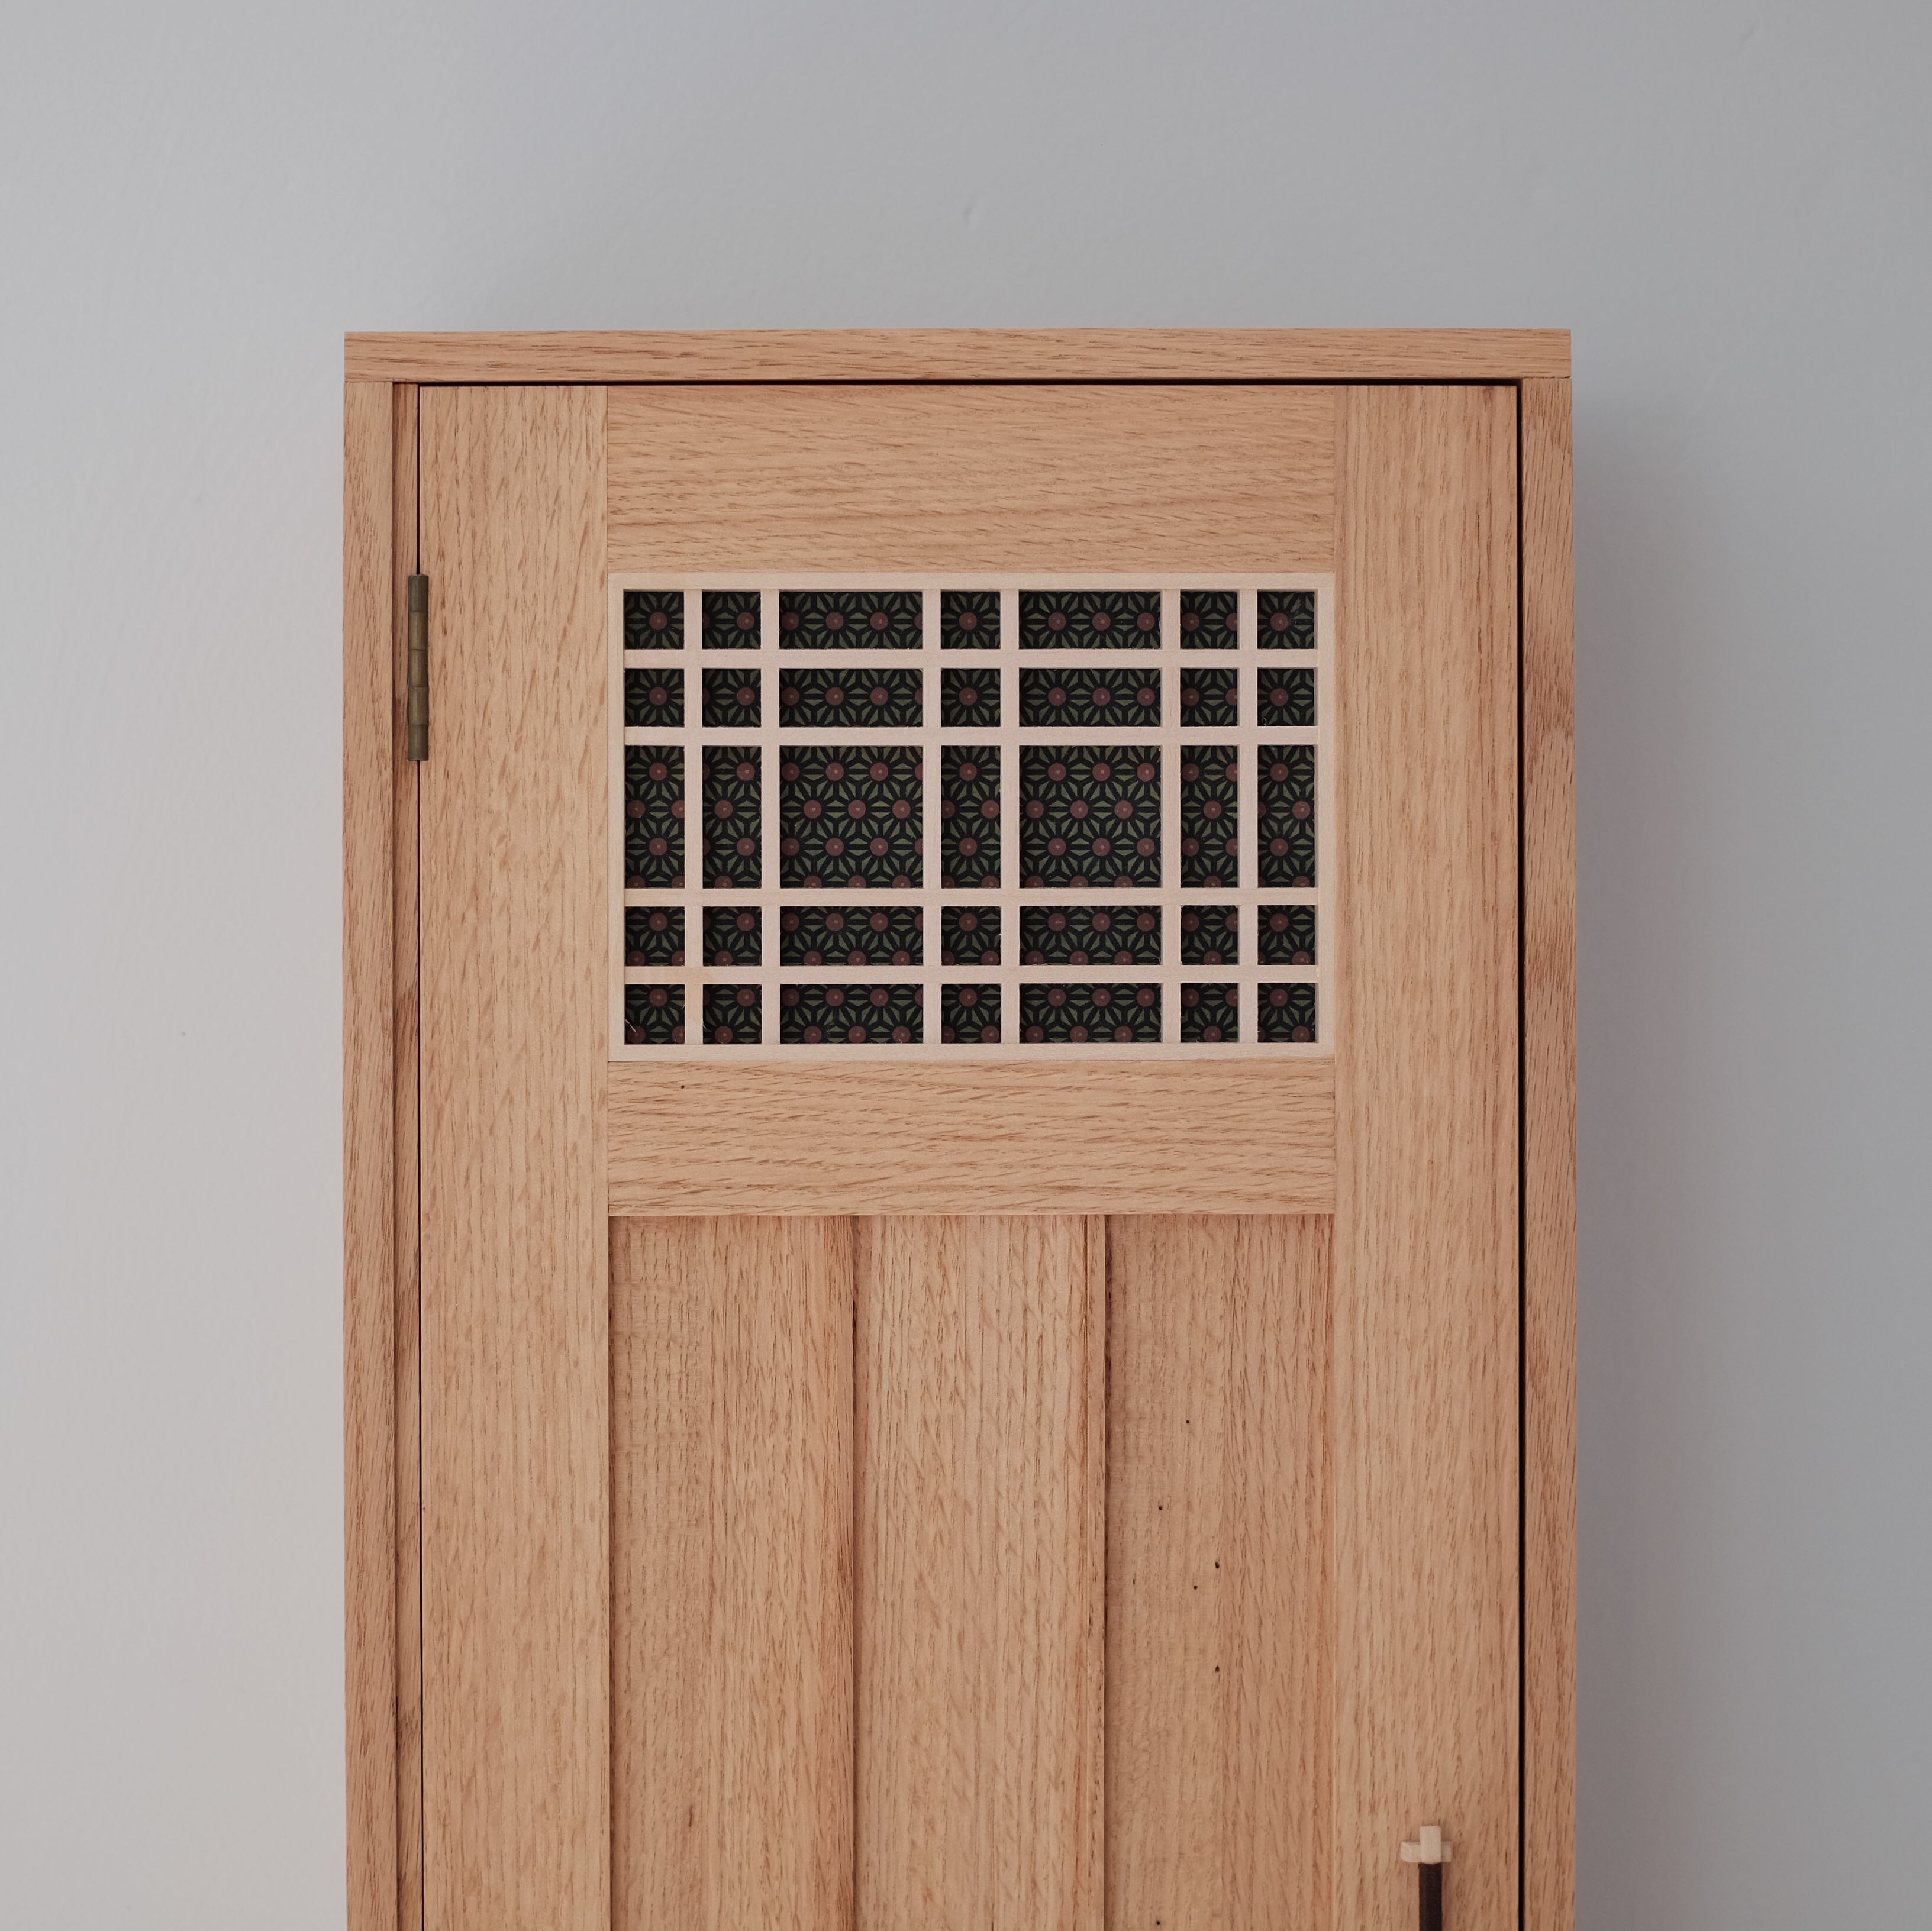 Japanese Cabinet Door Using Kumiko 